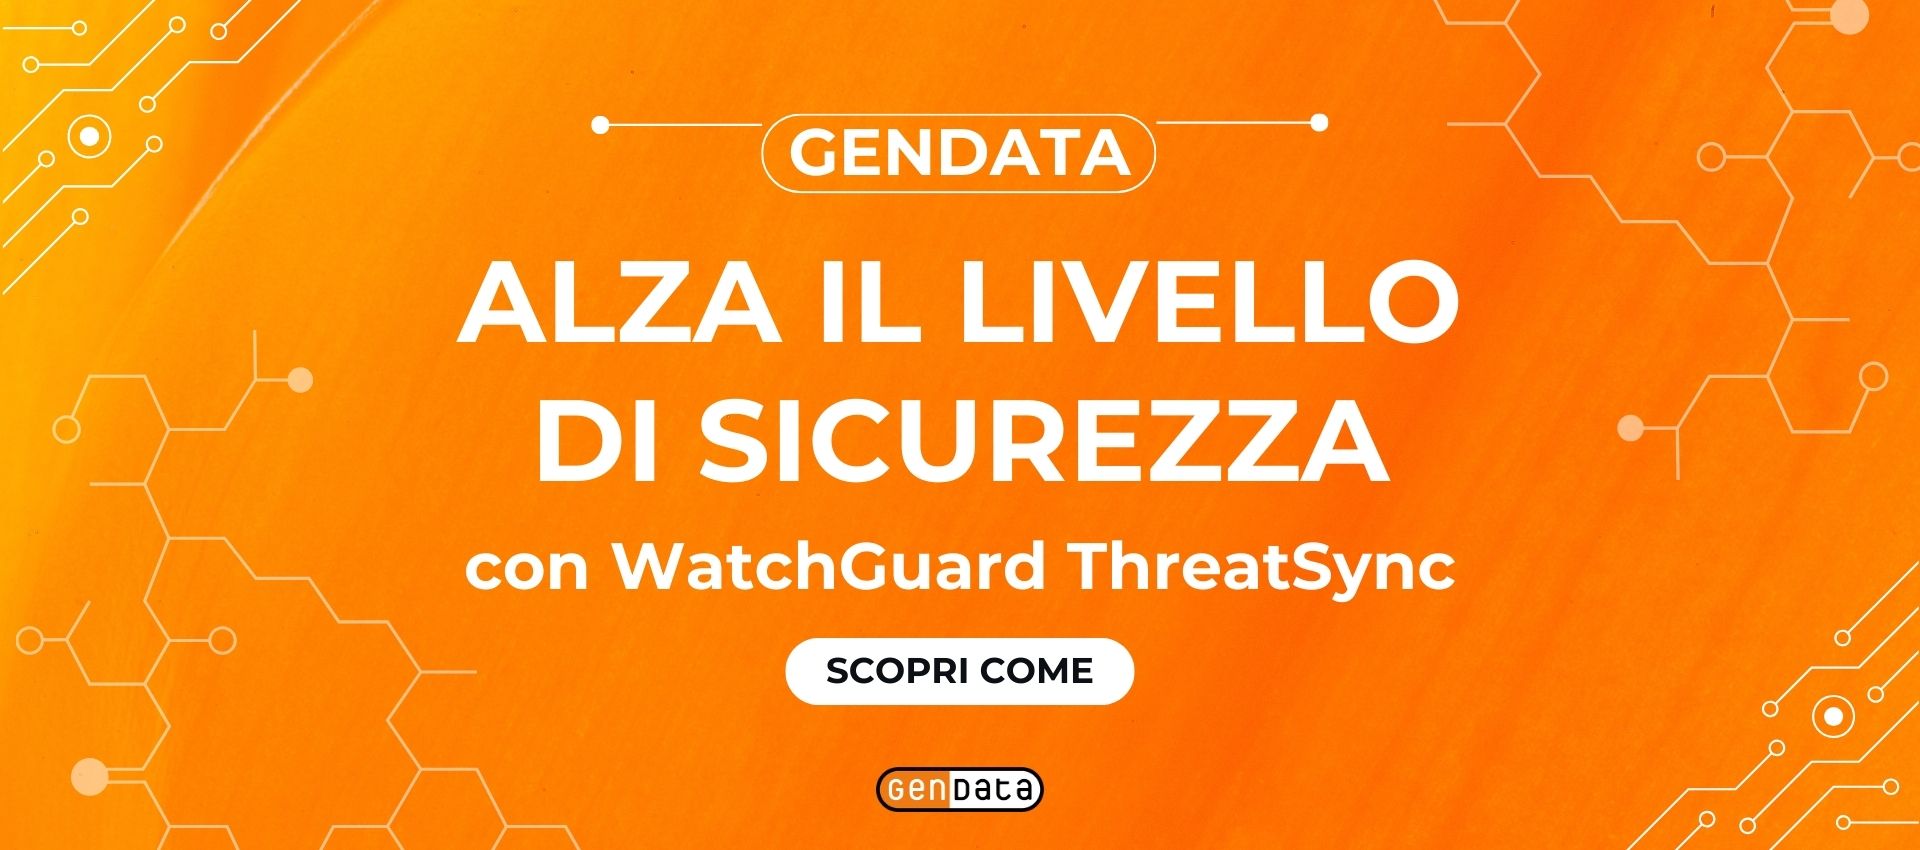 Gendata Alza il Livello di Sicurezza con WatchGuard ThreatSync: Scopri Come!